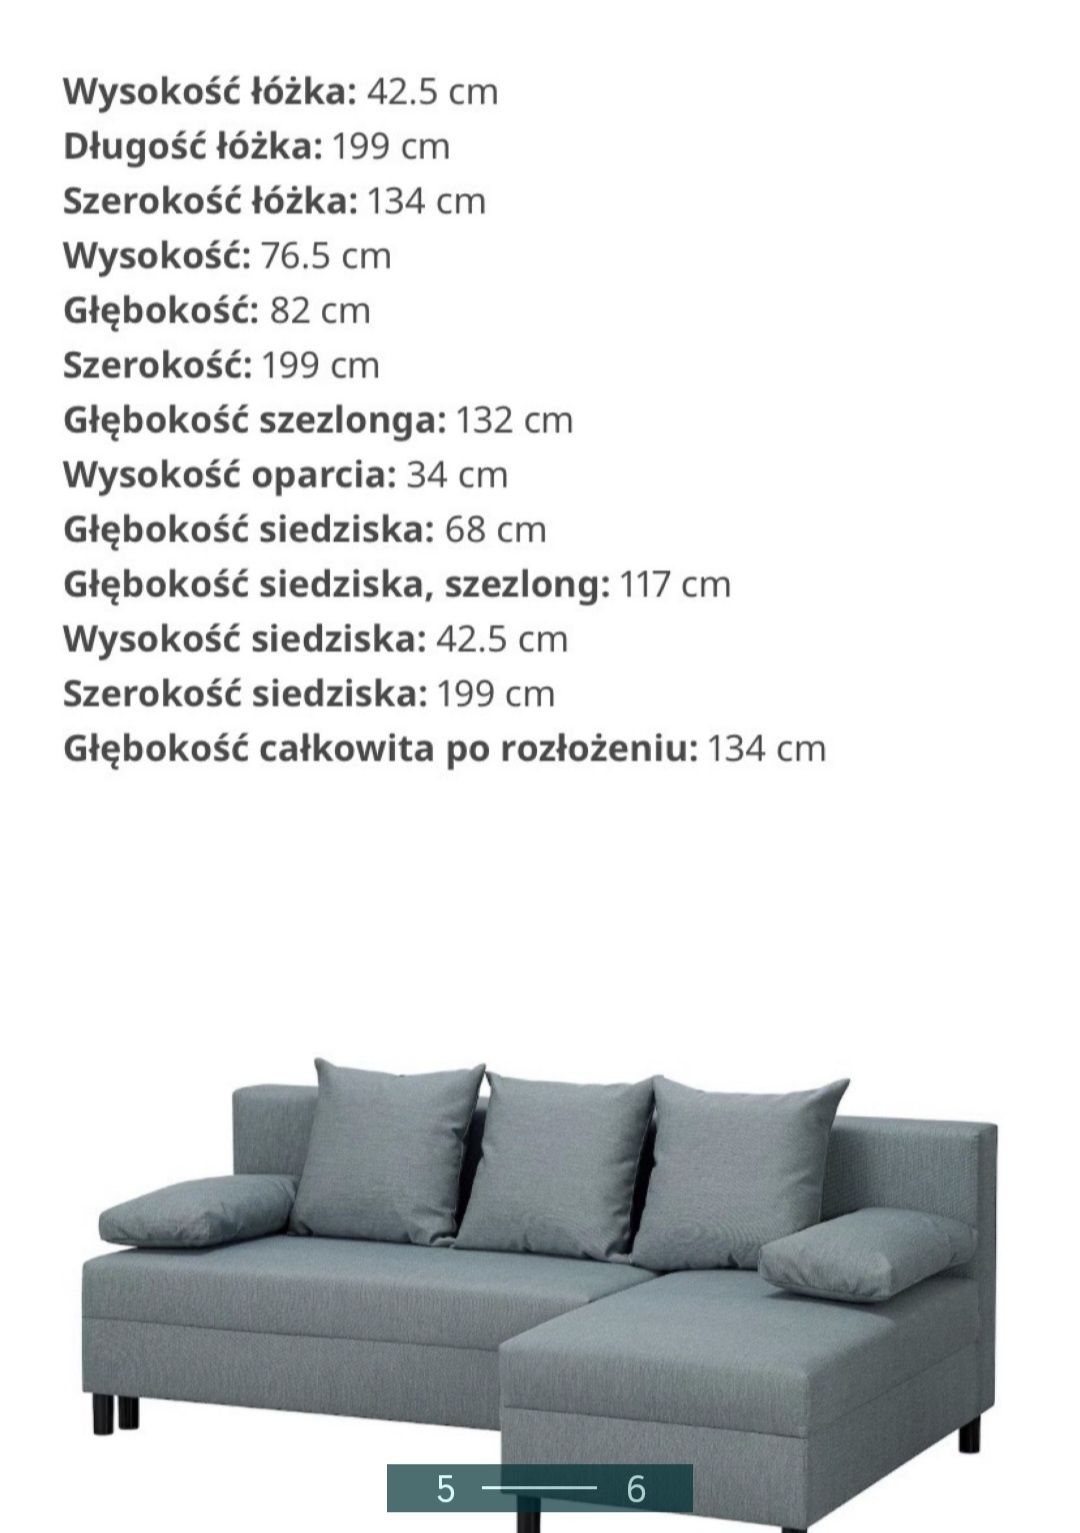 IKEA rozkadana sofa 3 osobowa z funkcja spania 
Rozkładana sofa 3-osob